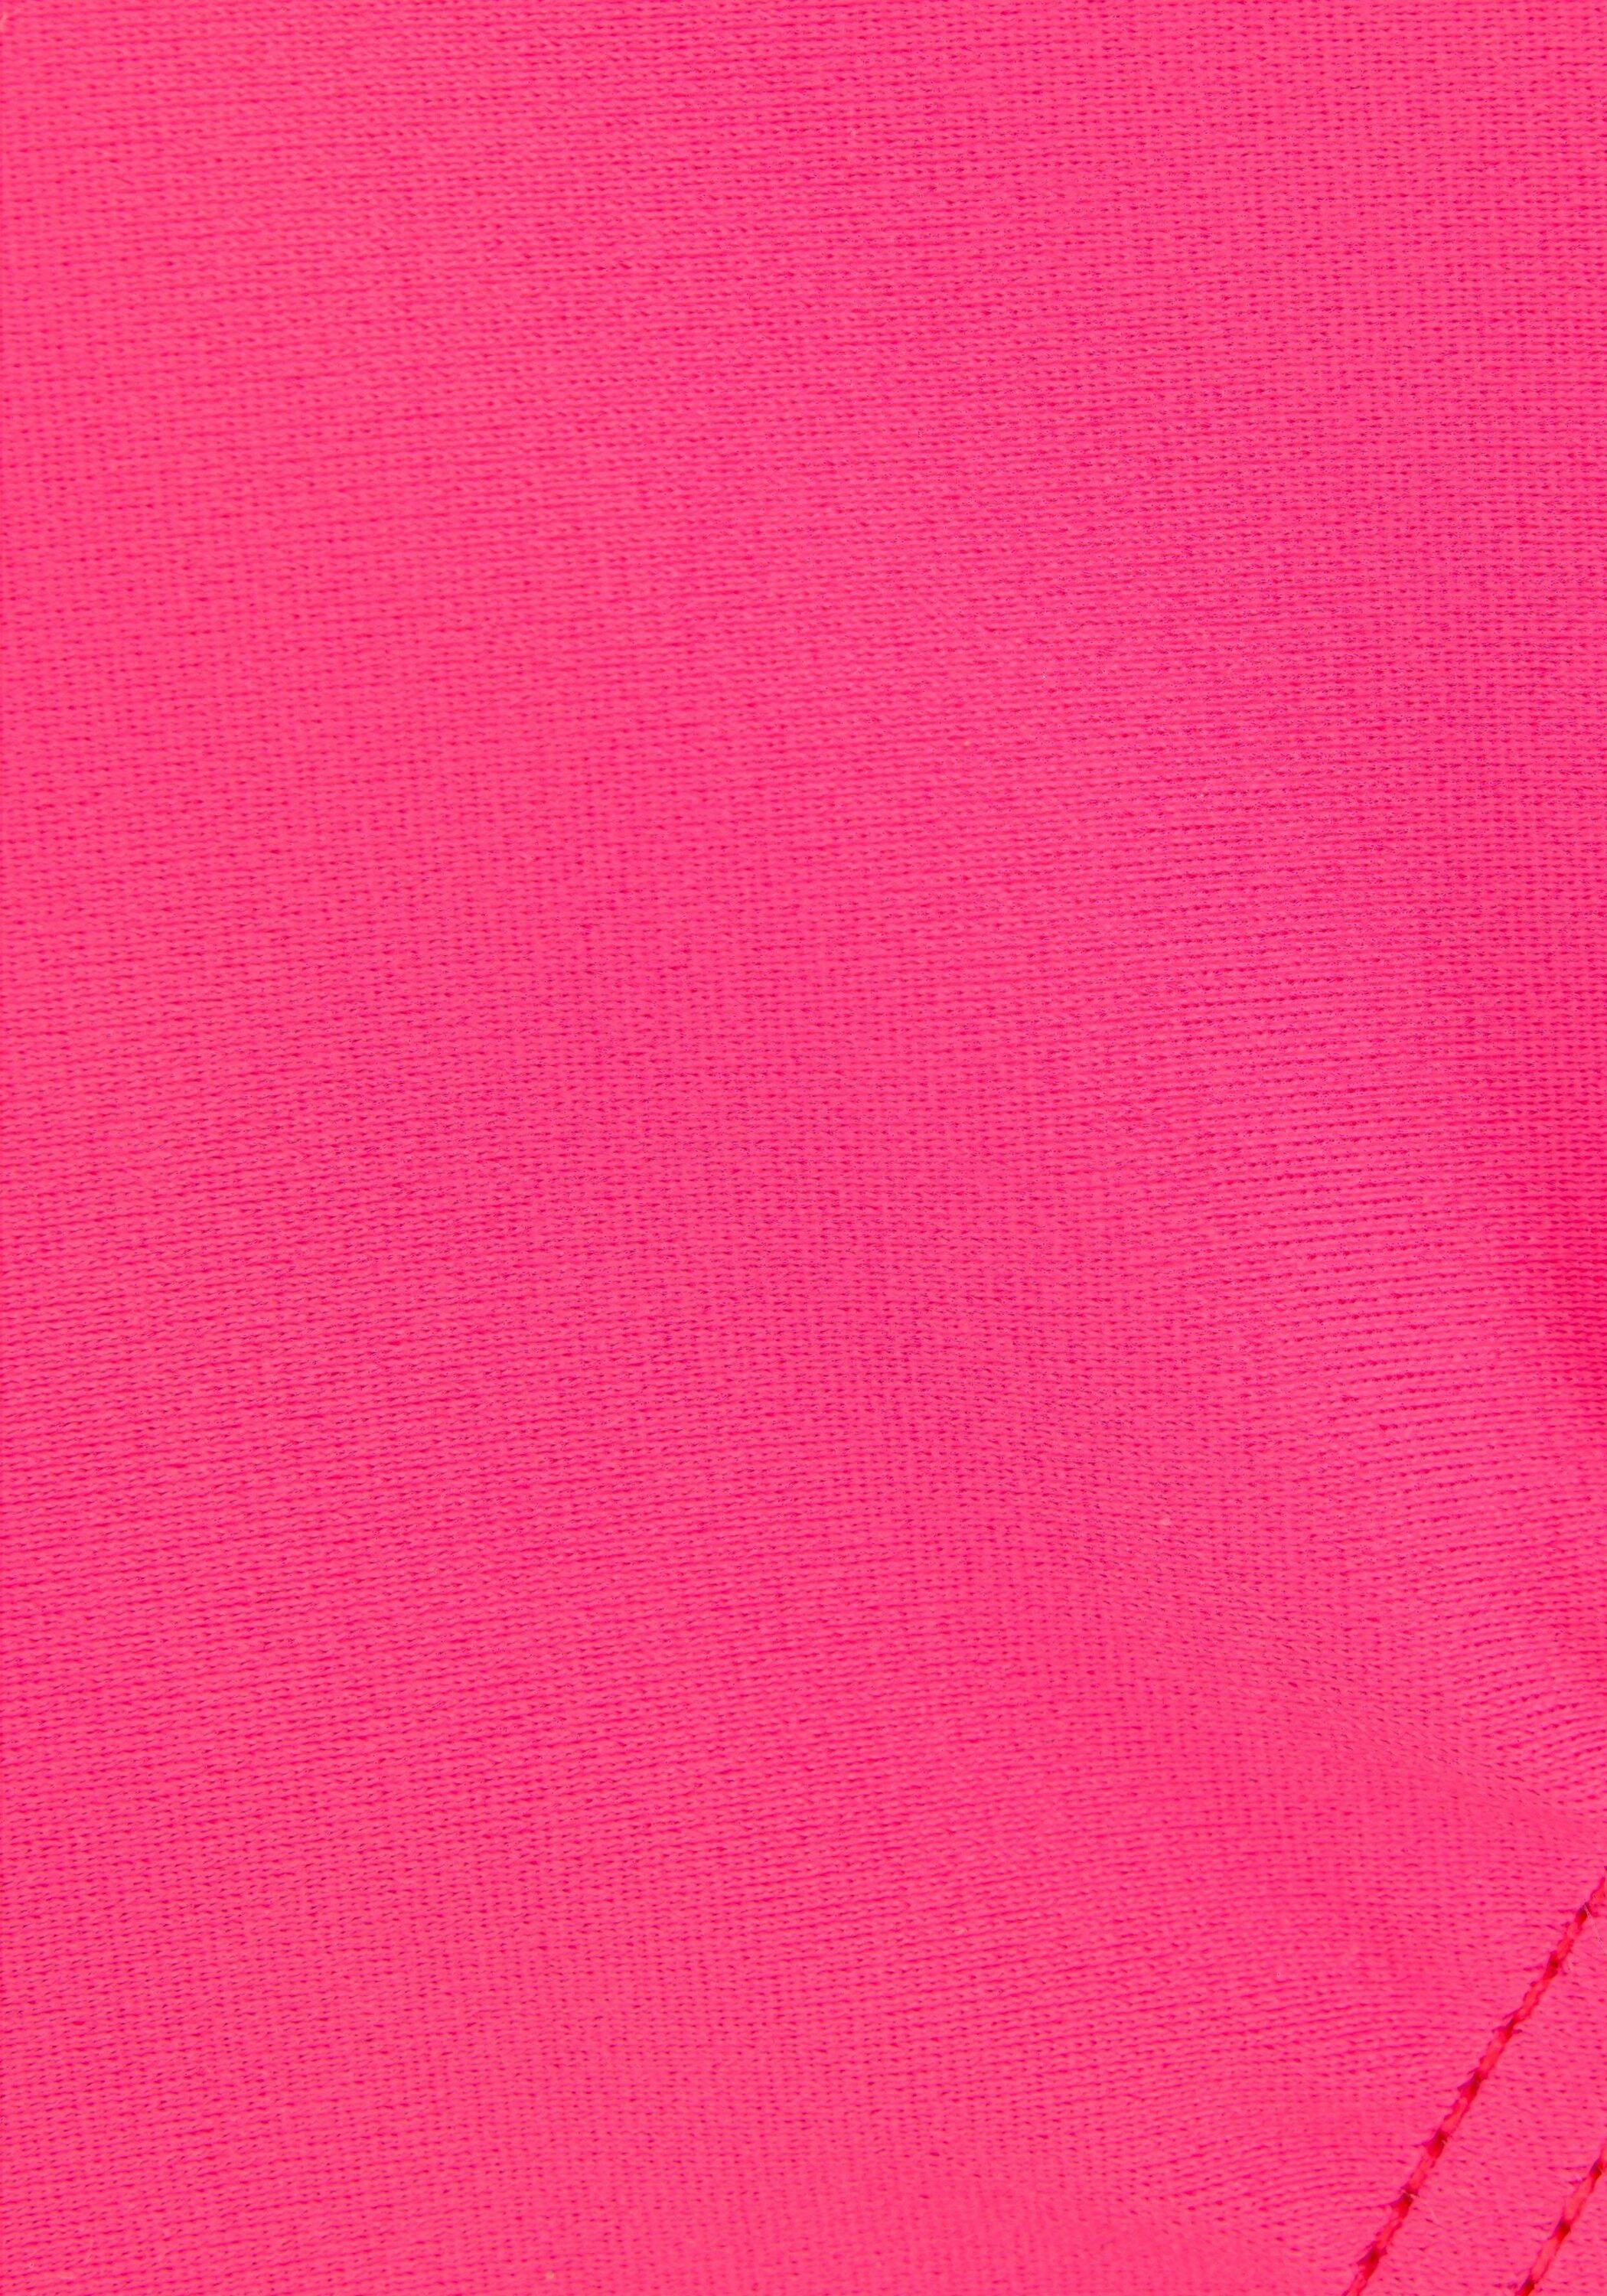 Bench Badeanzug Damen pink-schwarz von SportScheck Shop kaufen im Online